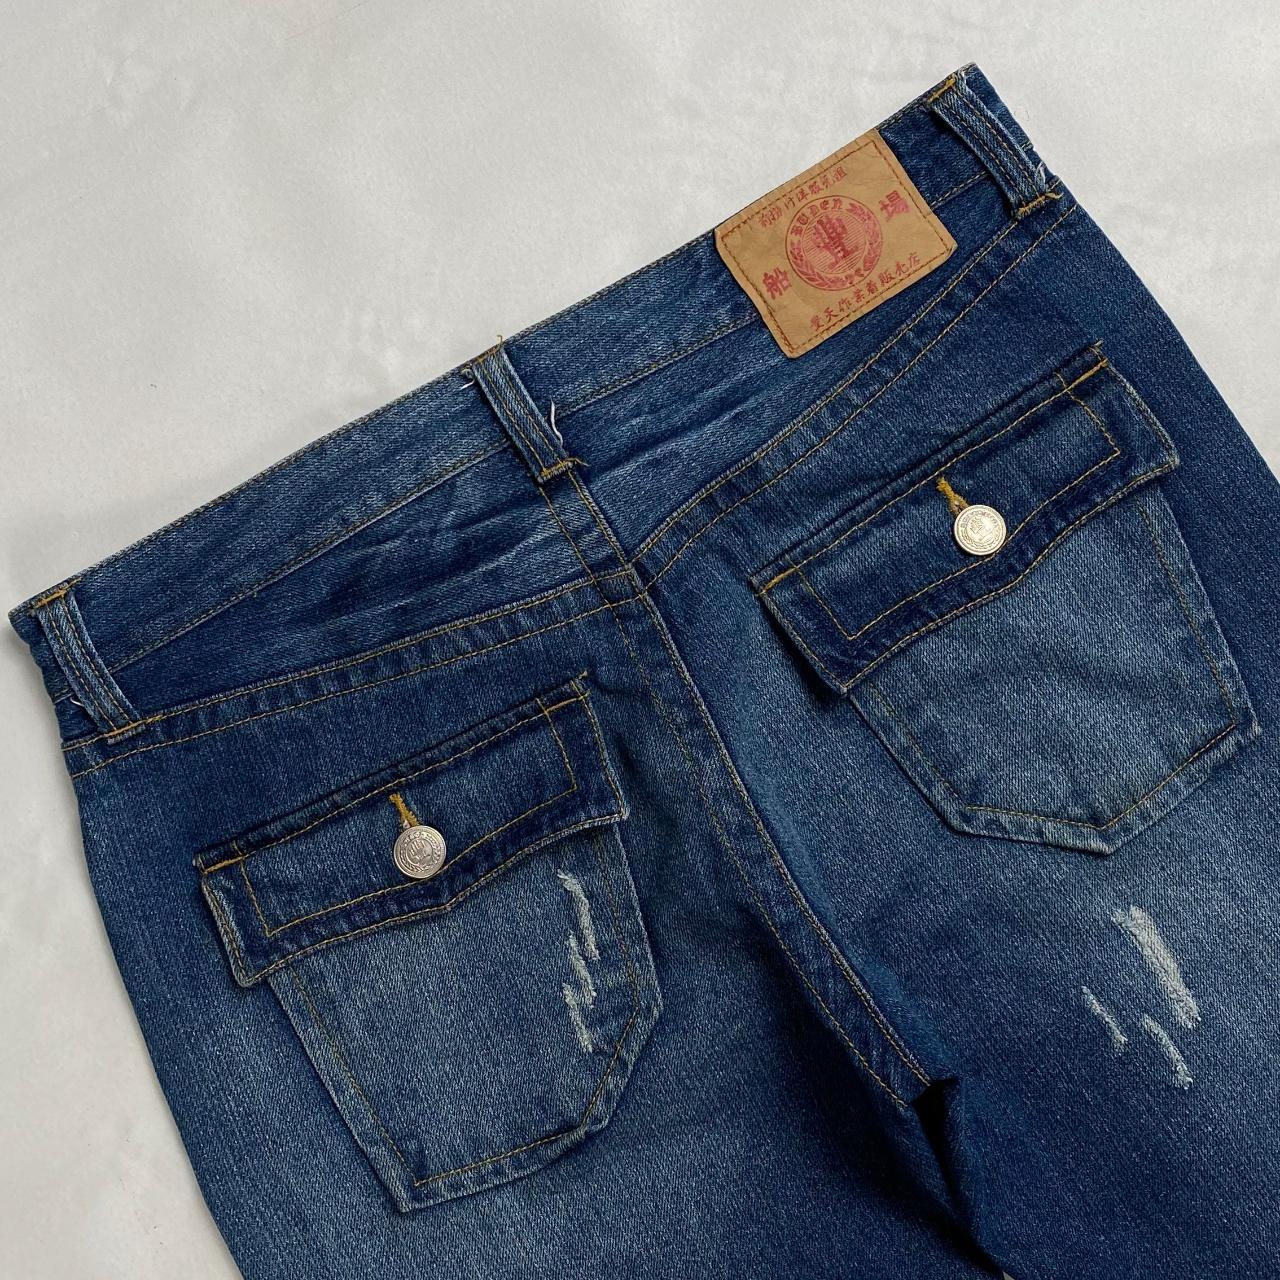 Authentic Vintage Japanese Denim Jeans  (33")